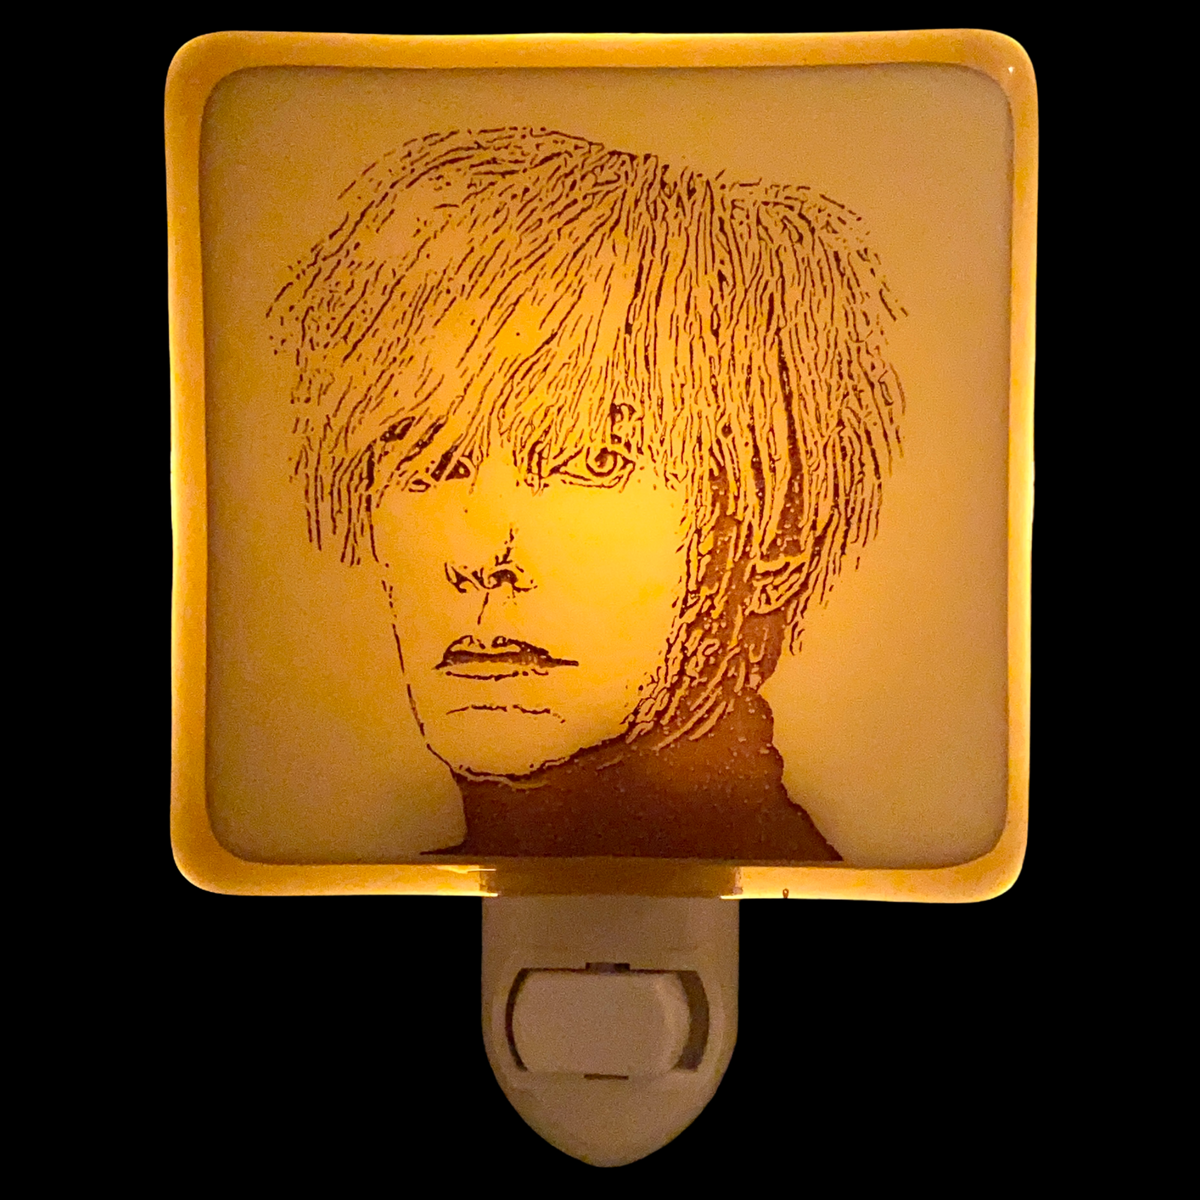 Andy Warhol Night Light